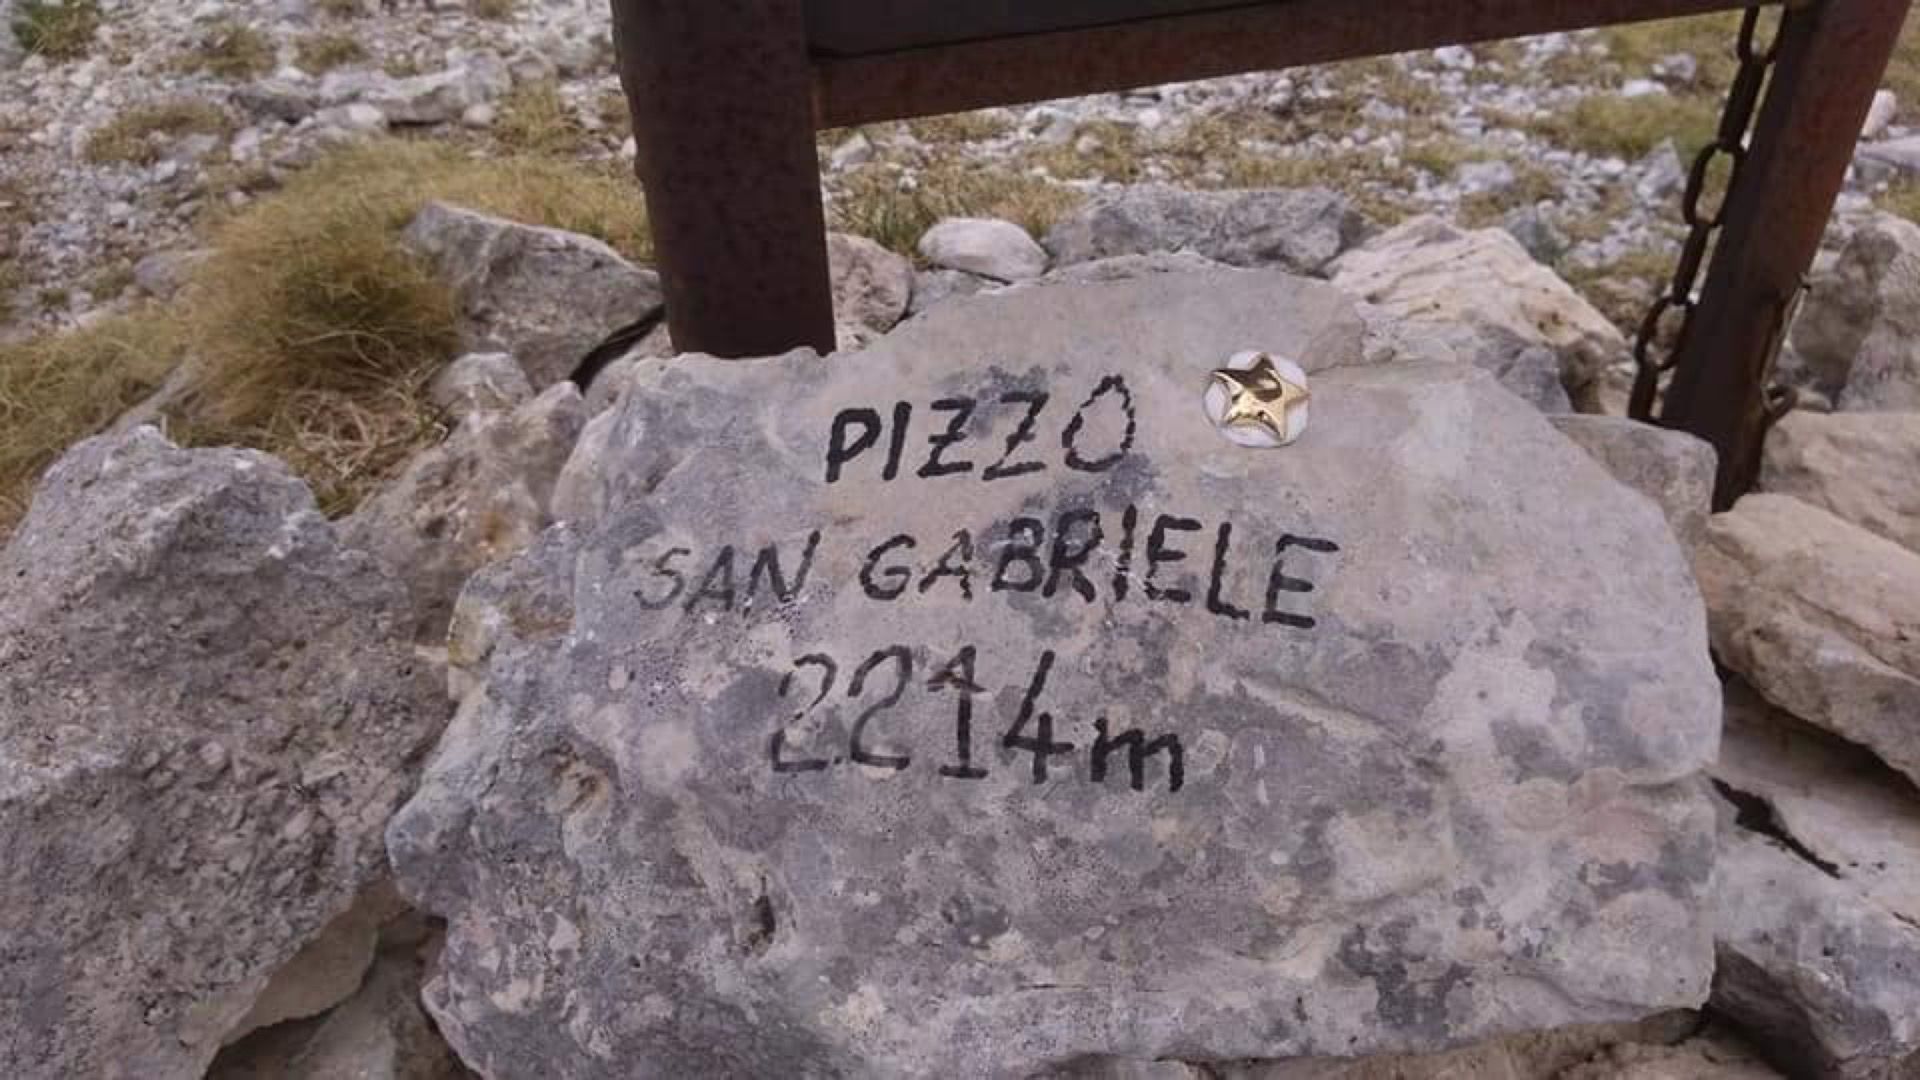 Escursioni In Vetta Nella Valle Siciliana Partendo Da San Pietro E Arrivando A Pizzo San Gabriele Foto 5